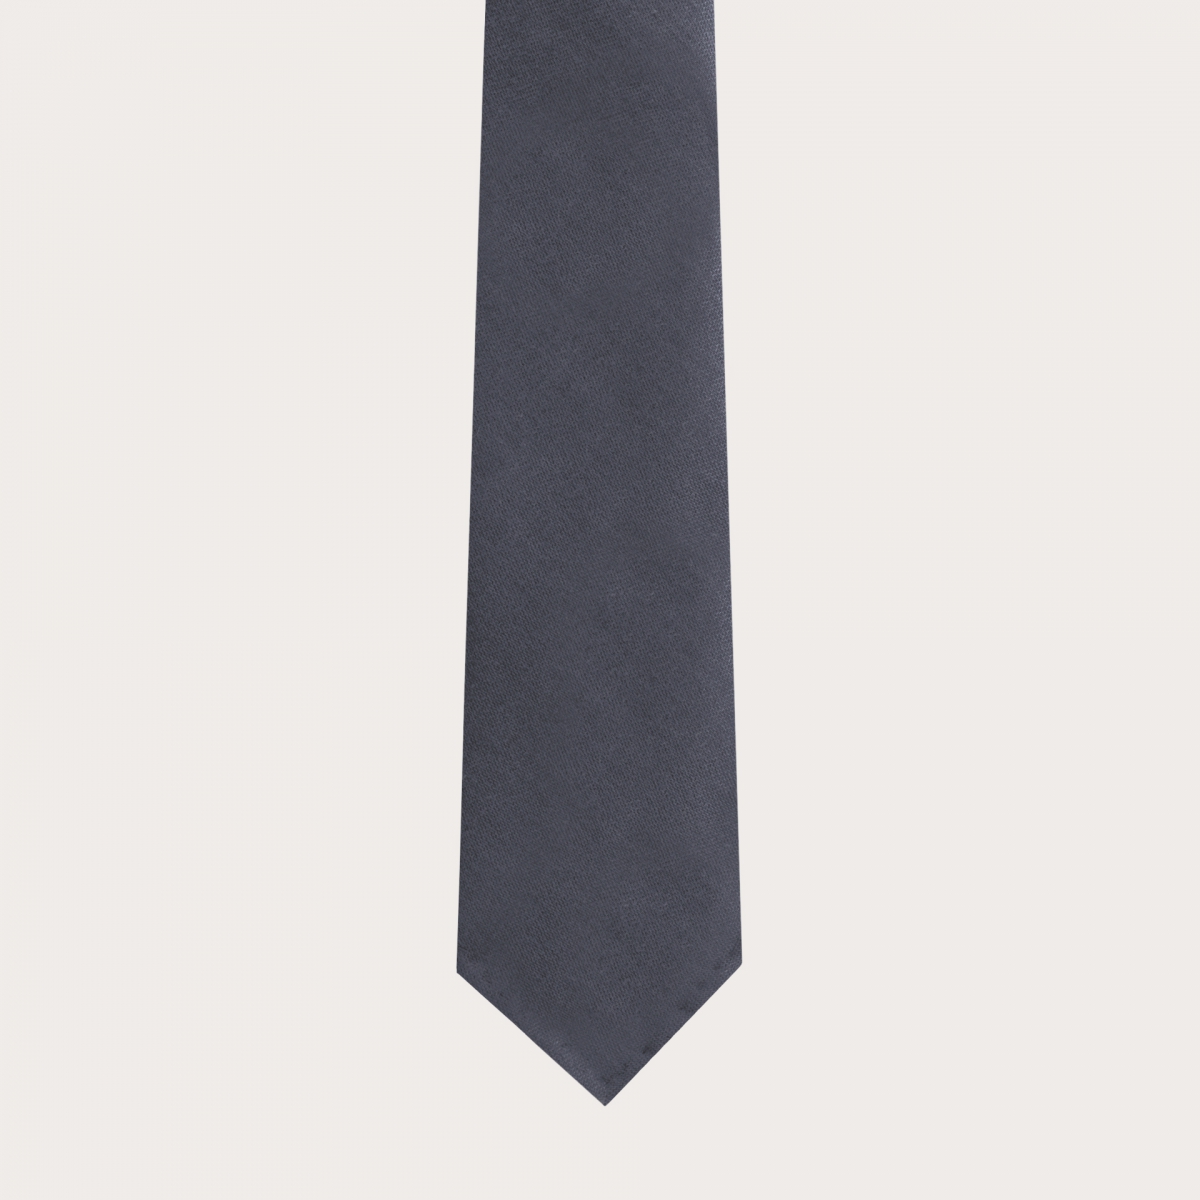 Ungefütterte Krawatte aus Schurwolle und Hanf, dunkelgrau